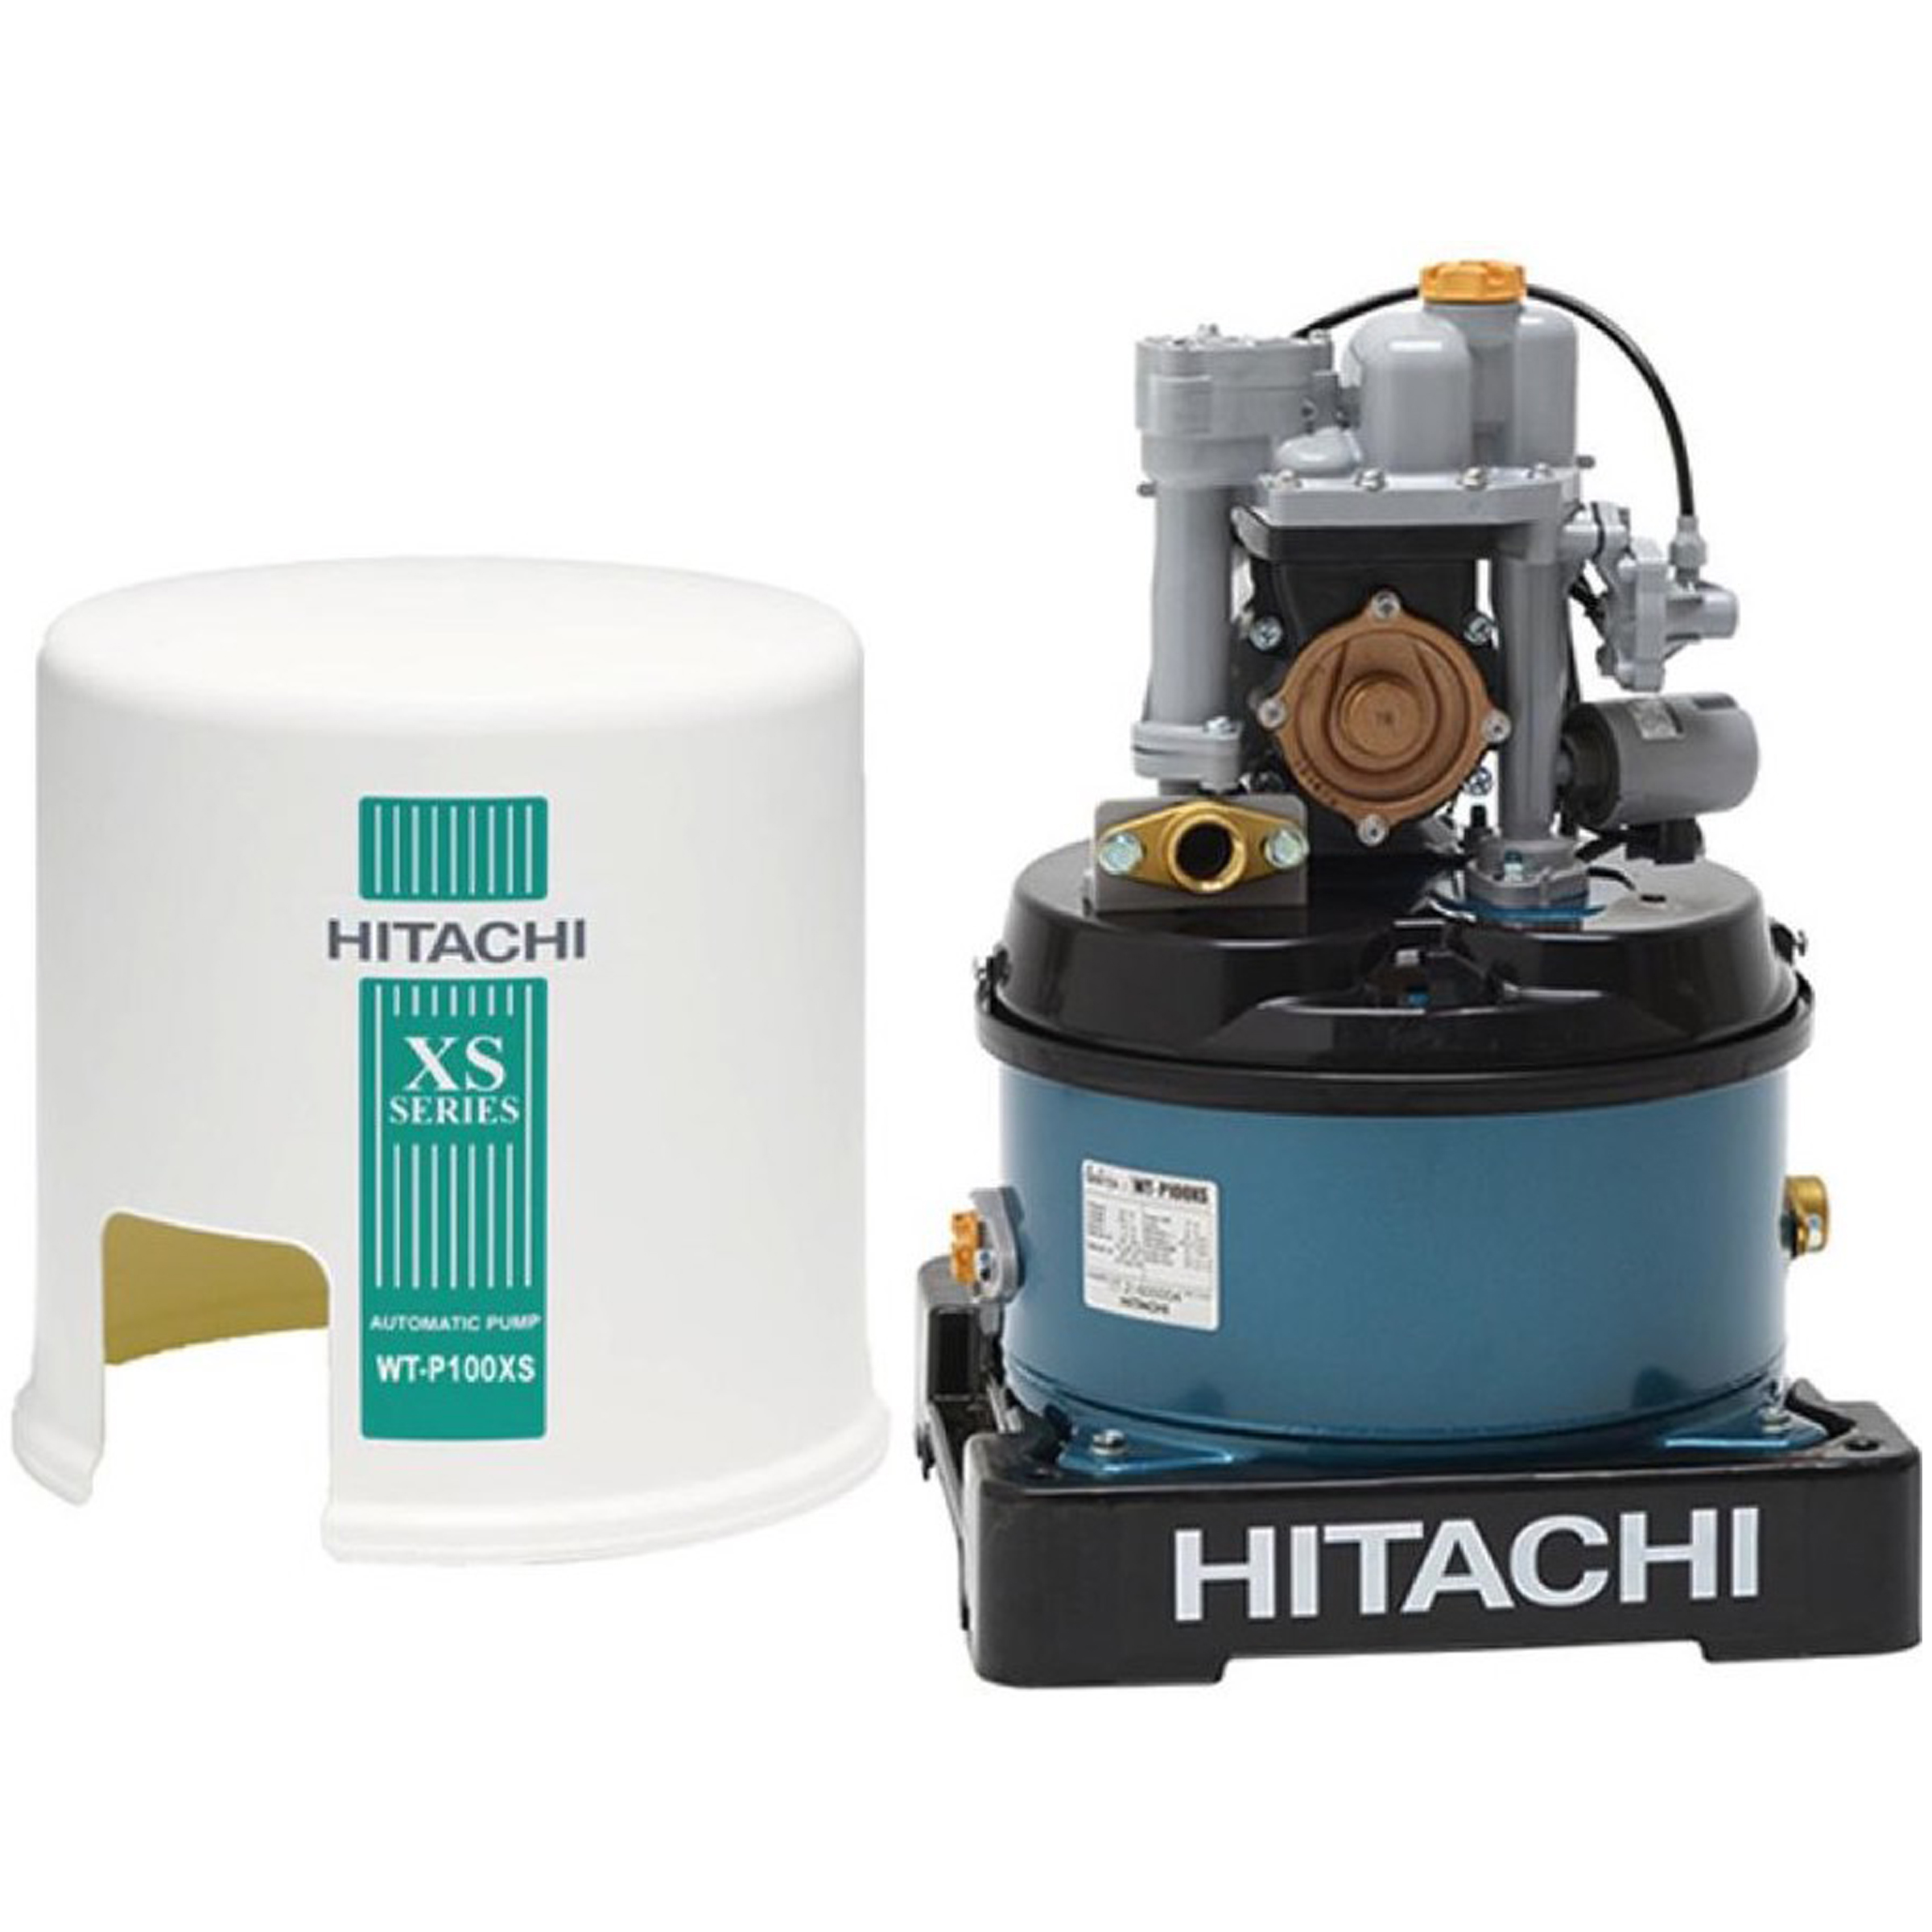 HITACHI Automatic Pump 100W, 30L/min, WT-P100XS